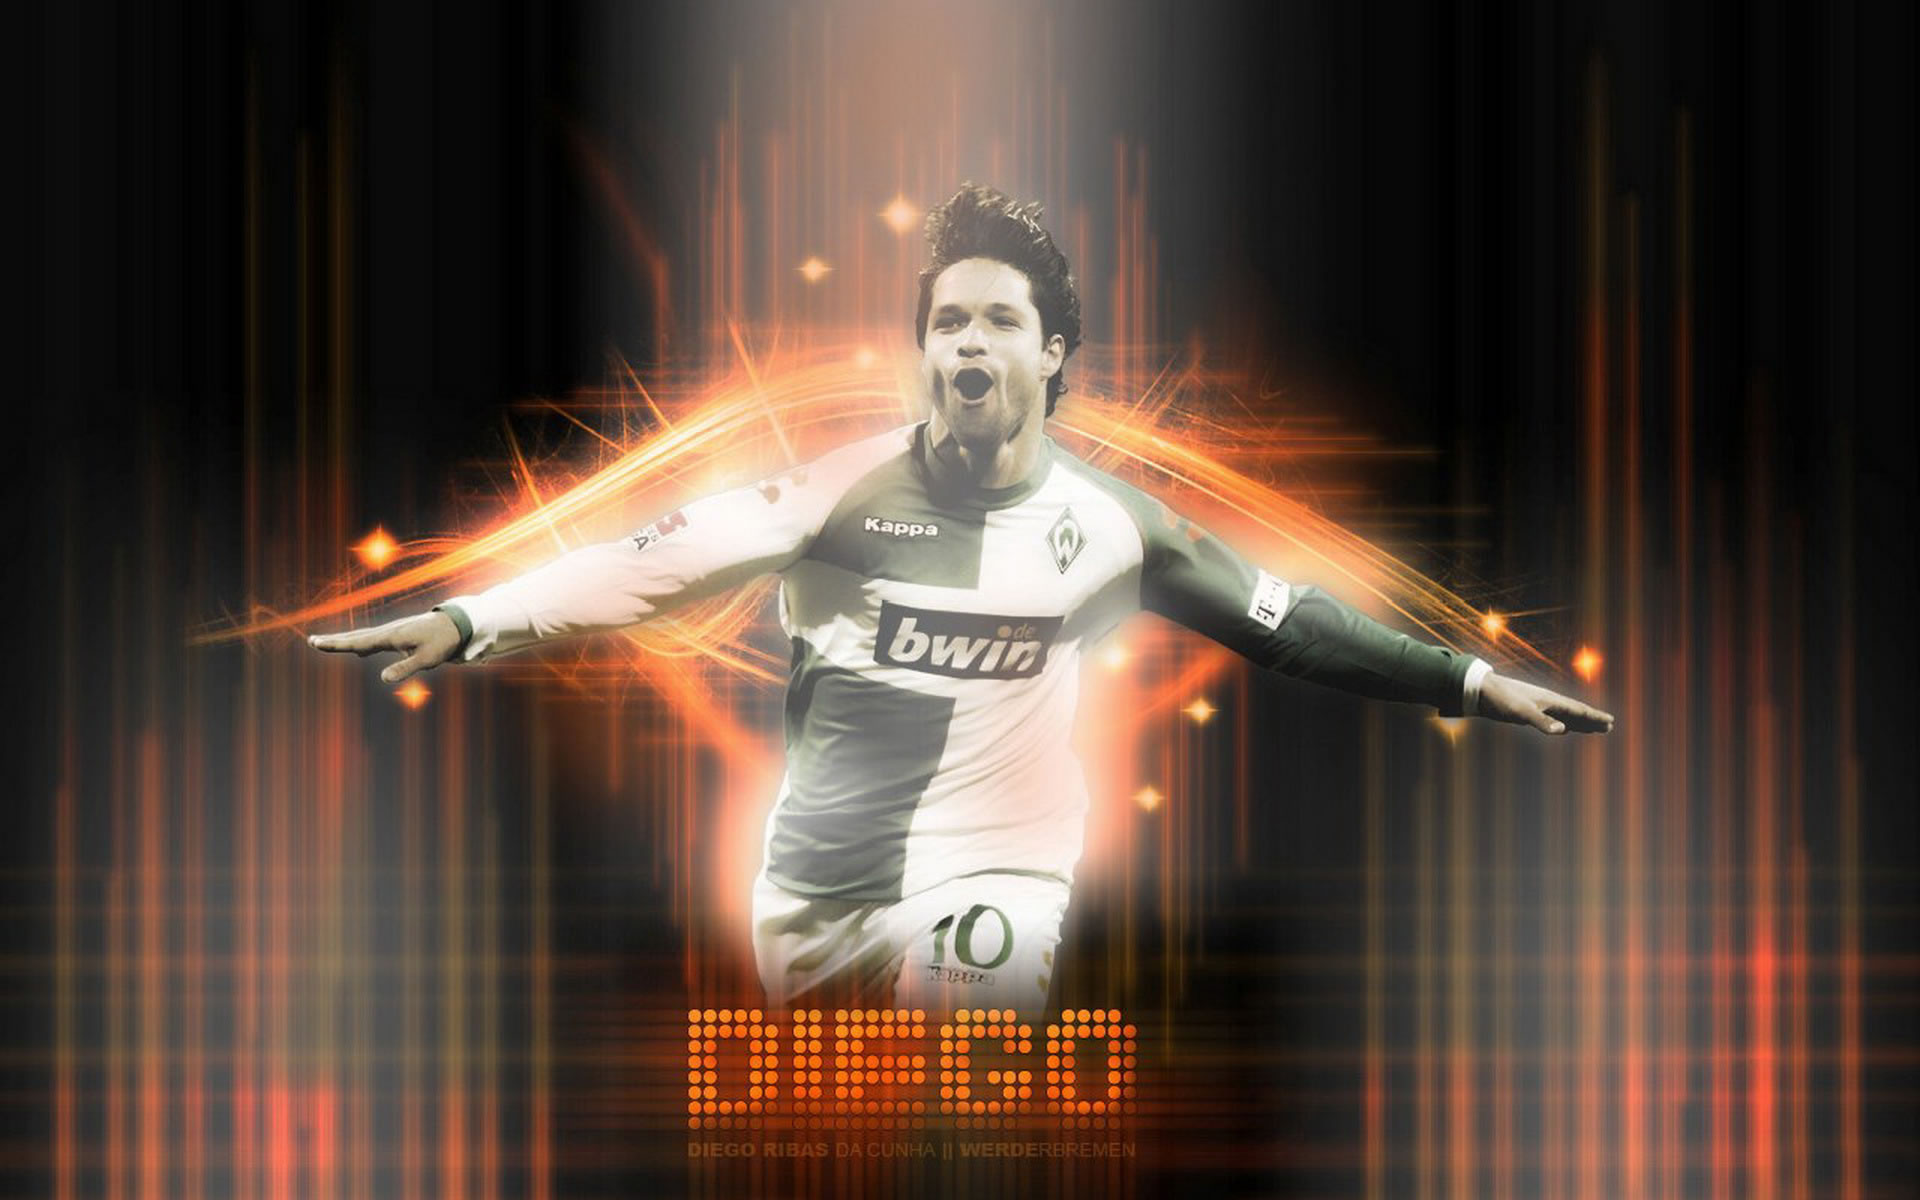 Diego Werder Bremen - HD Wallpaper 